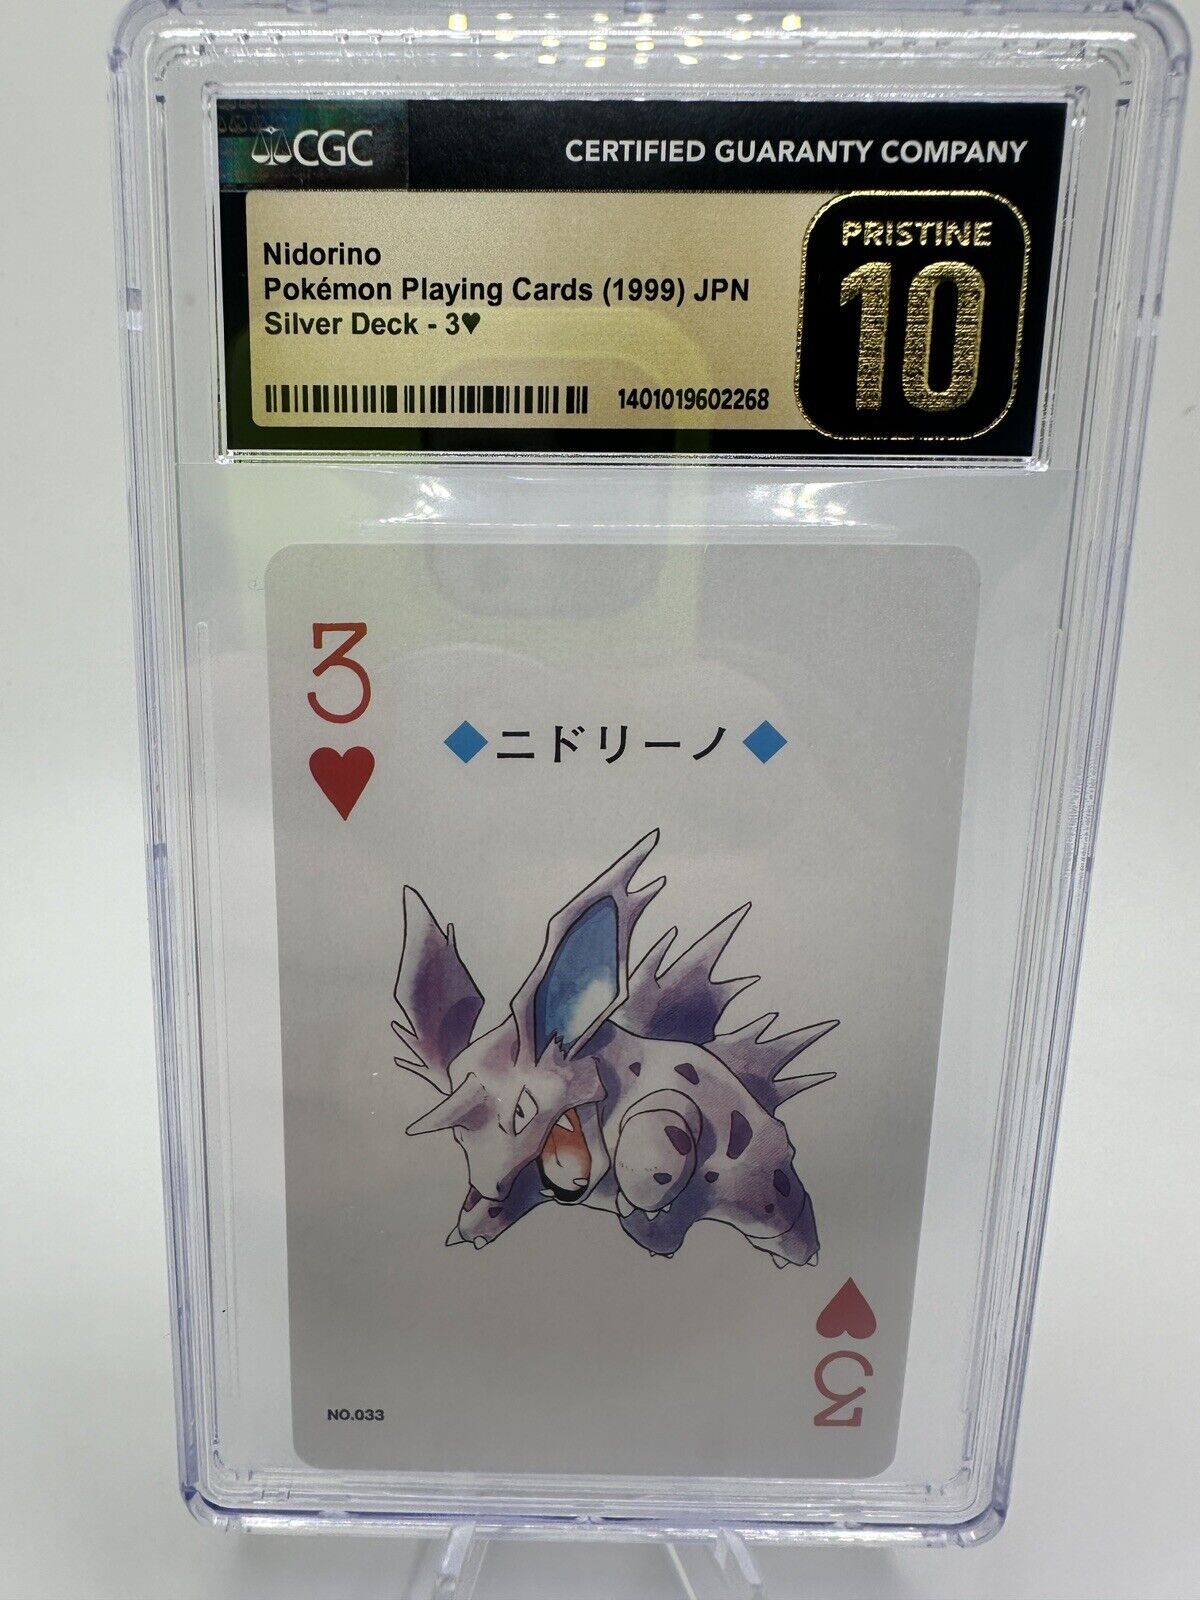 CGC Pristine 10 Nidorino   Pokémon Poker Playing Card 1999 Japan Lugia Silver